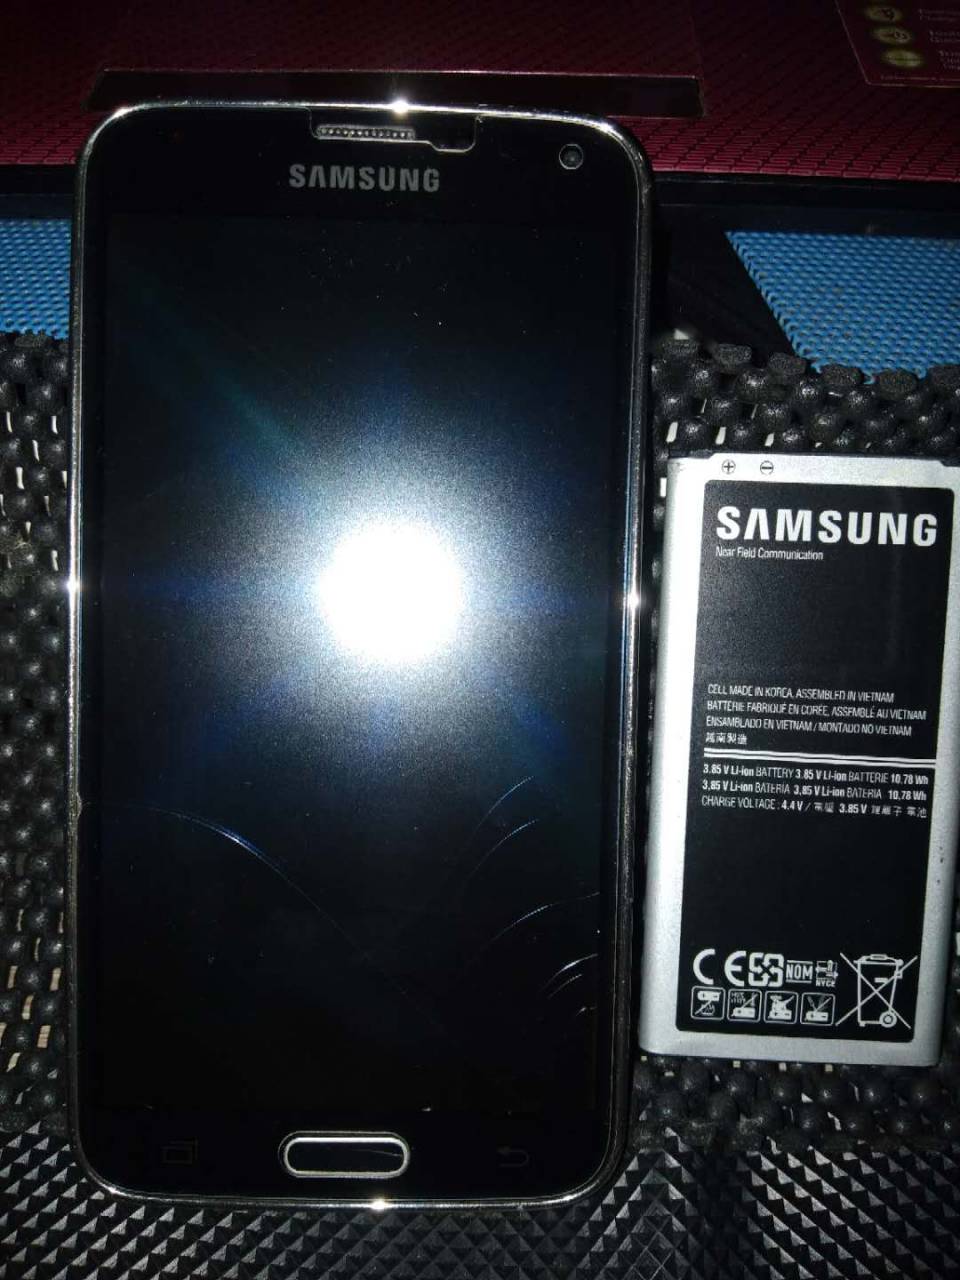 Samsung Galaxy S5 LTE-A G901F